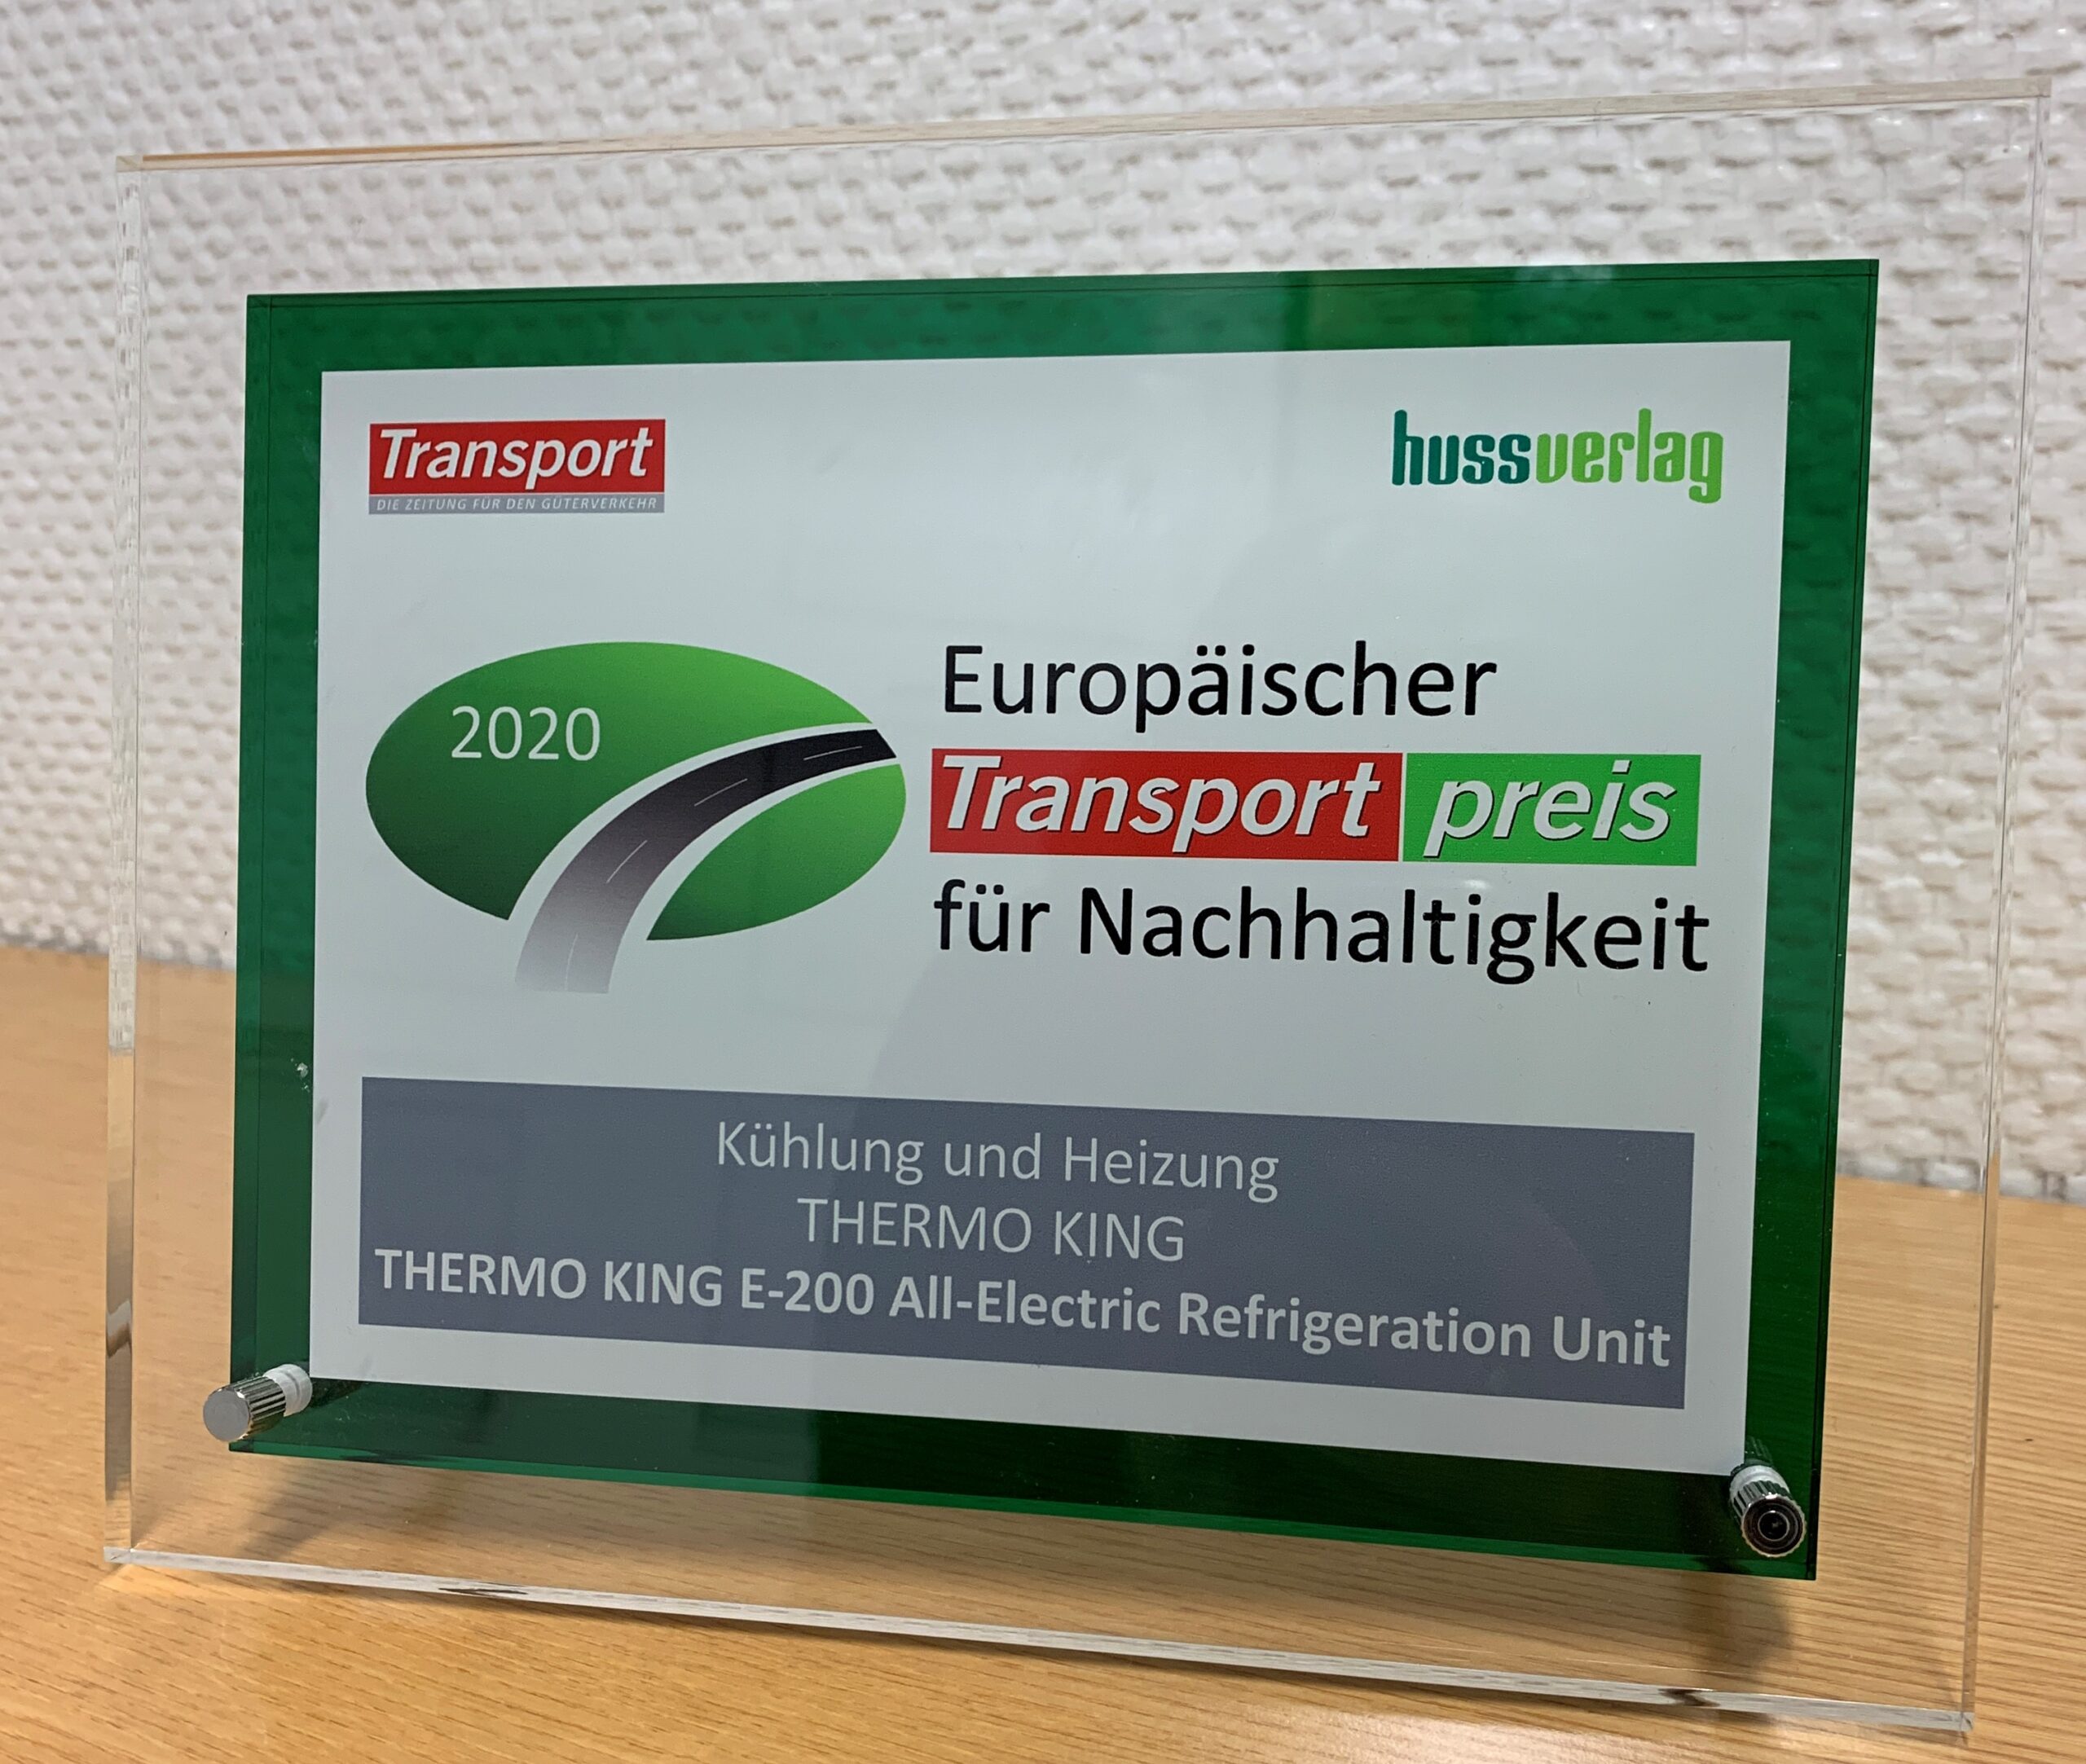 Thermo King remporte le prix du transport européen pour le développement durable 2020 (European Transport Award for Sustainability 2020) pour son groupe frigorifique innovant 100 % électrique E-200